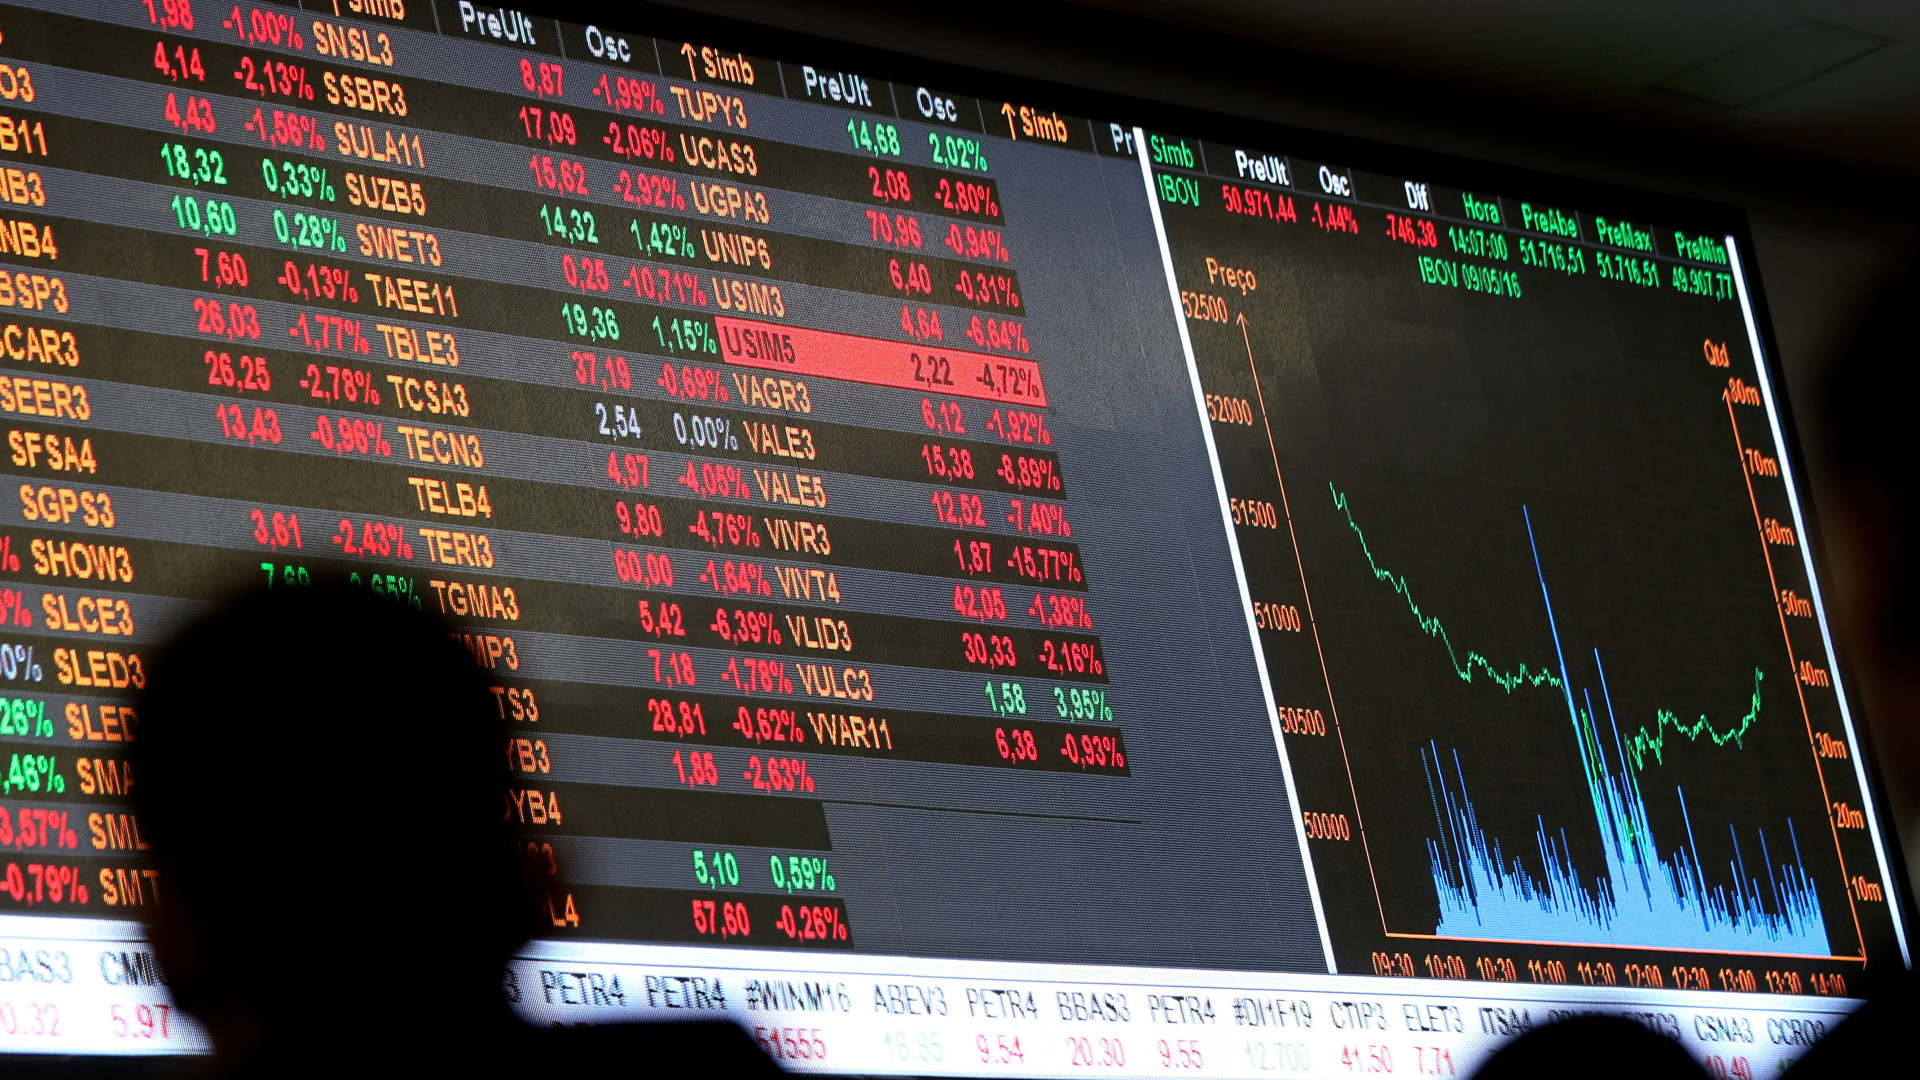 Otimismo volta e investidores entram 
com R$ 1,166 bi na Bolsa 